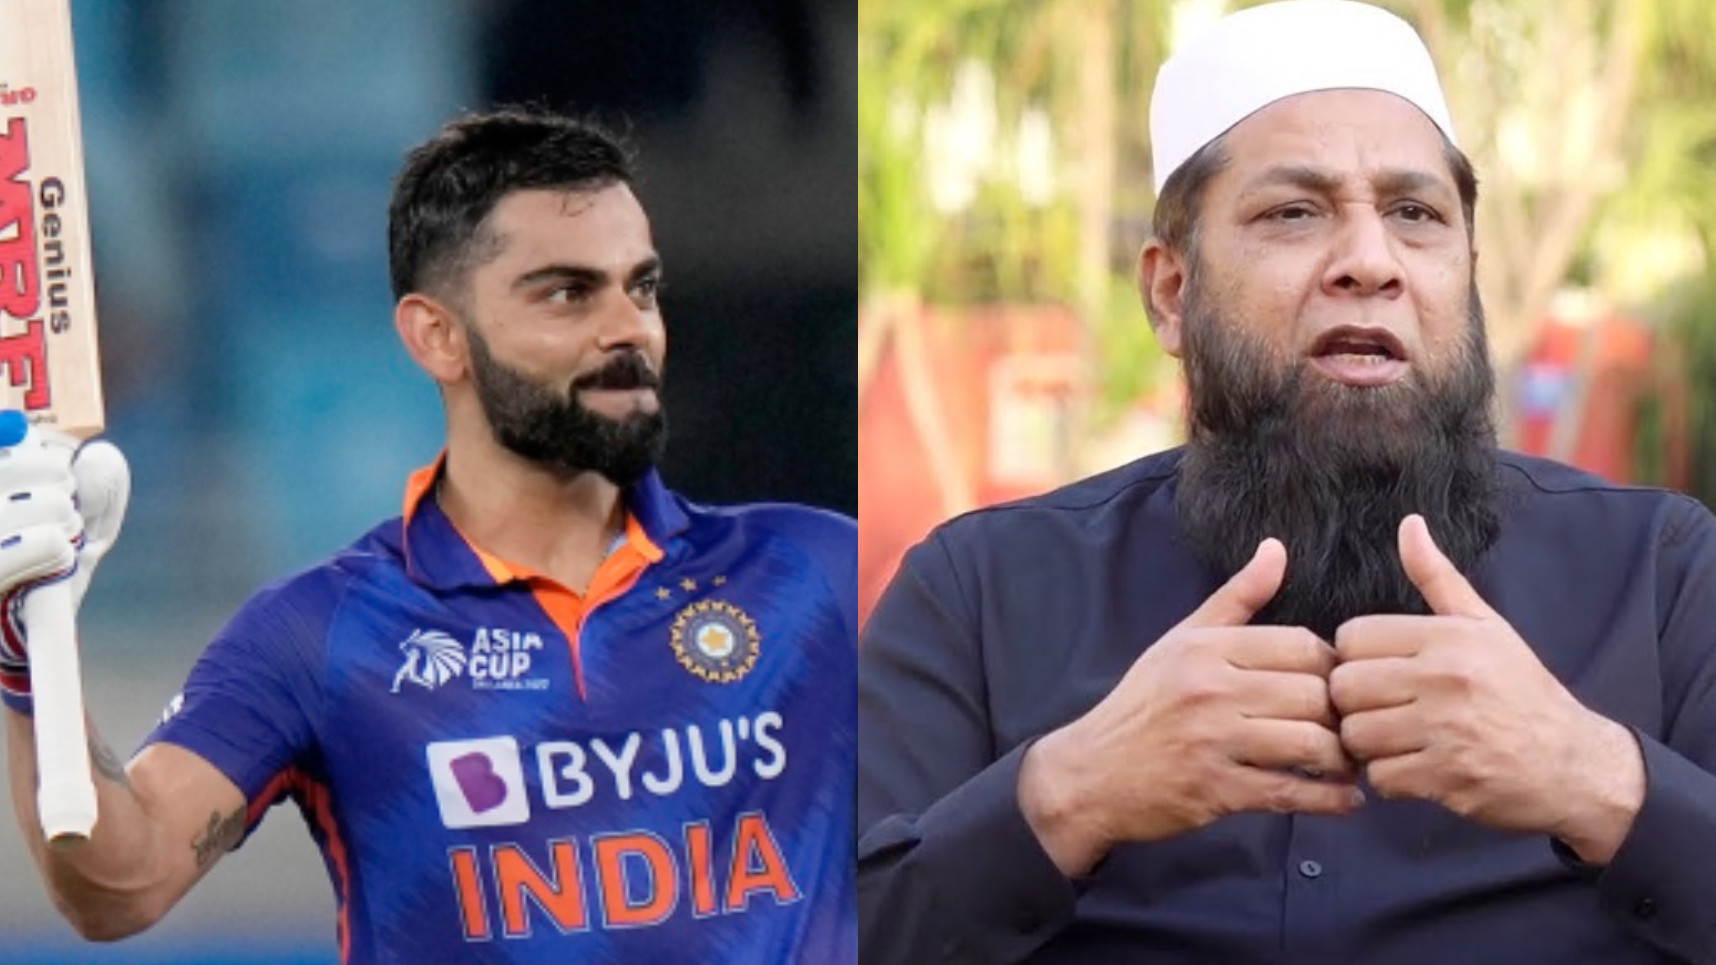 Asia Cup 2022: 'Meherbaan badi der ki aate aate'- Inzamam Ul Haq praises Virat Kohli after his maiden T20I ton